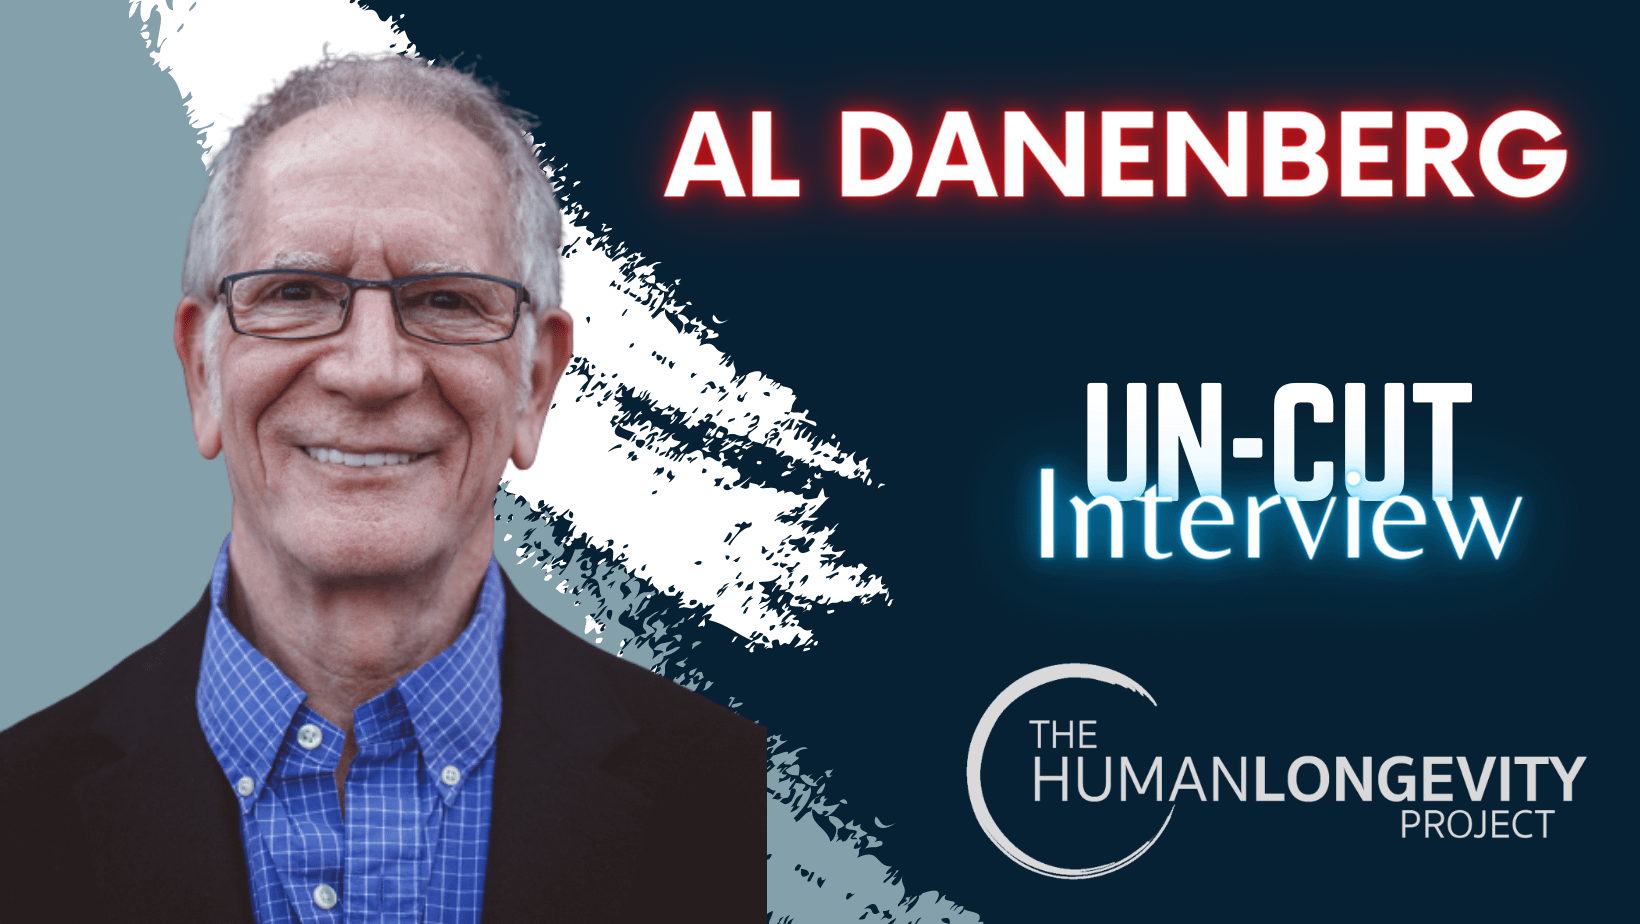 Human Longevity Project Uncut Interview With Dr. Al Danenberg